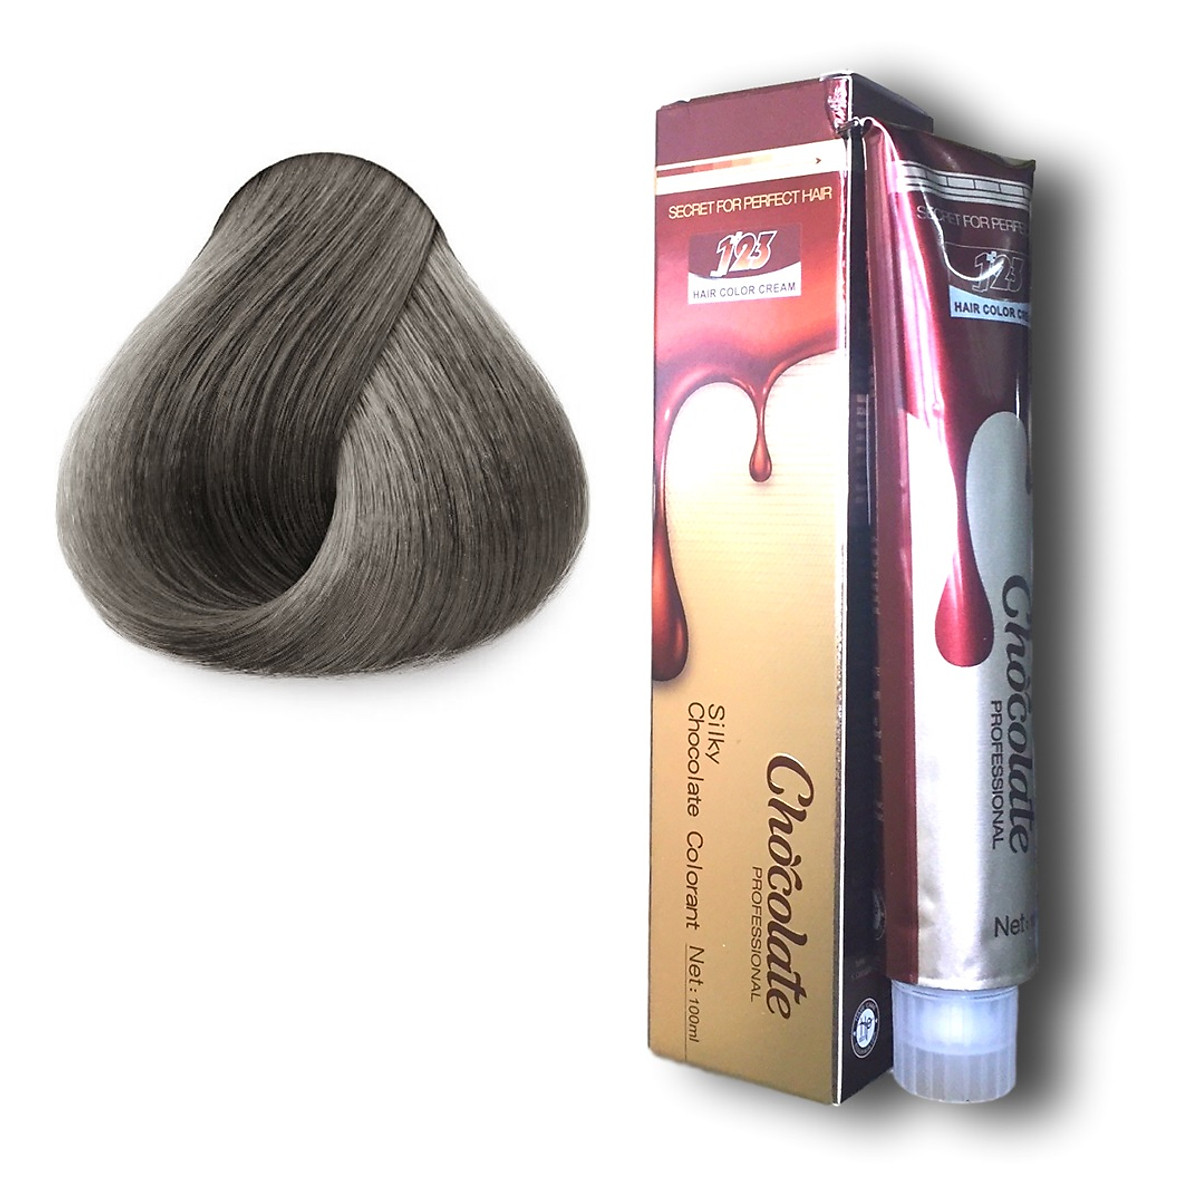 Thuốc nhuộm tóc màu xám khói hương Socola (9.11) 123 Chocolate Color Cream 100ml